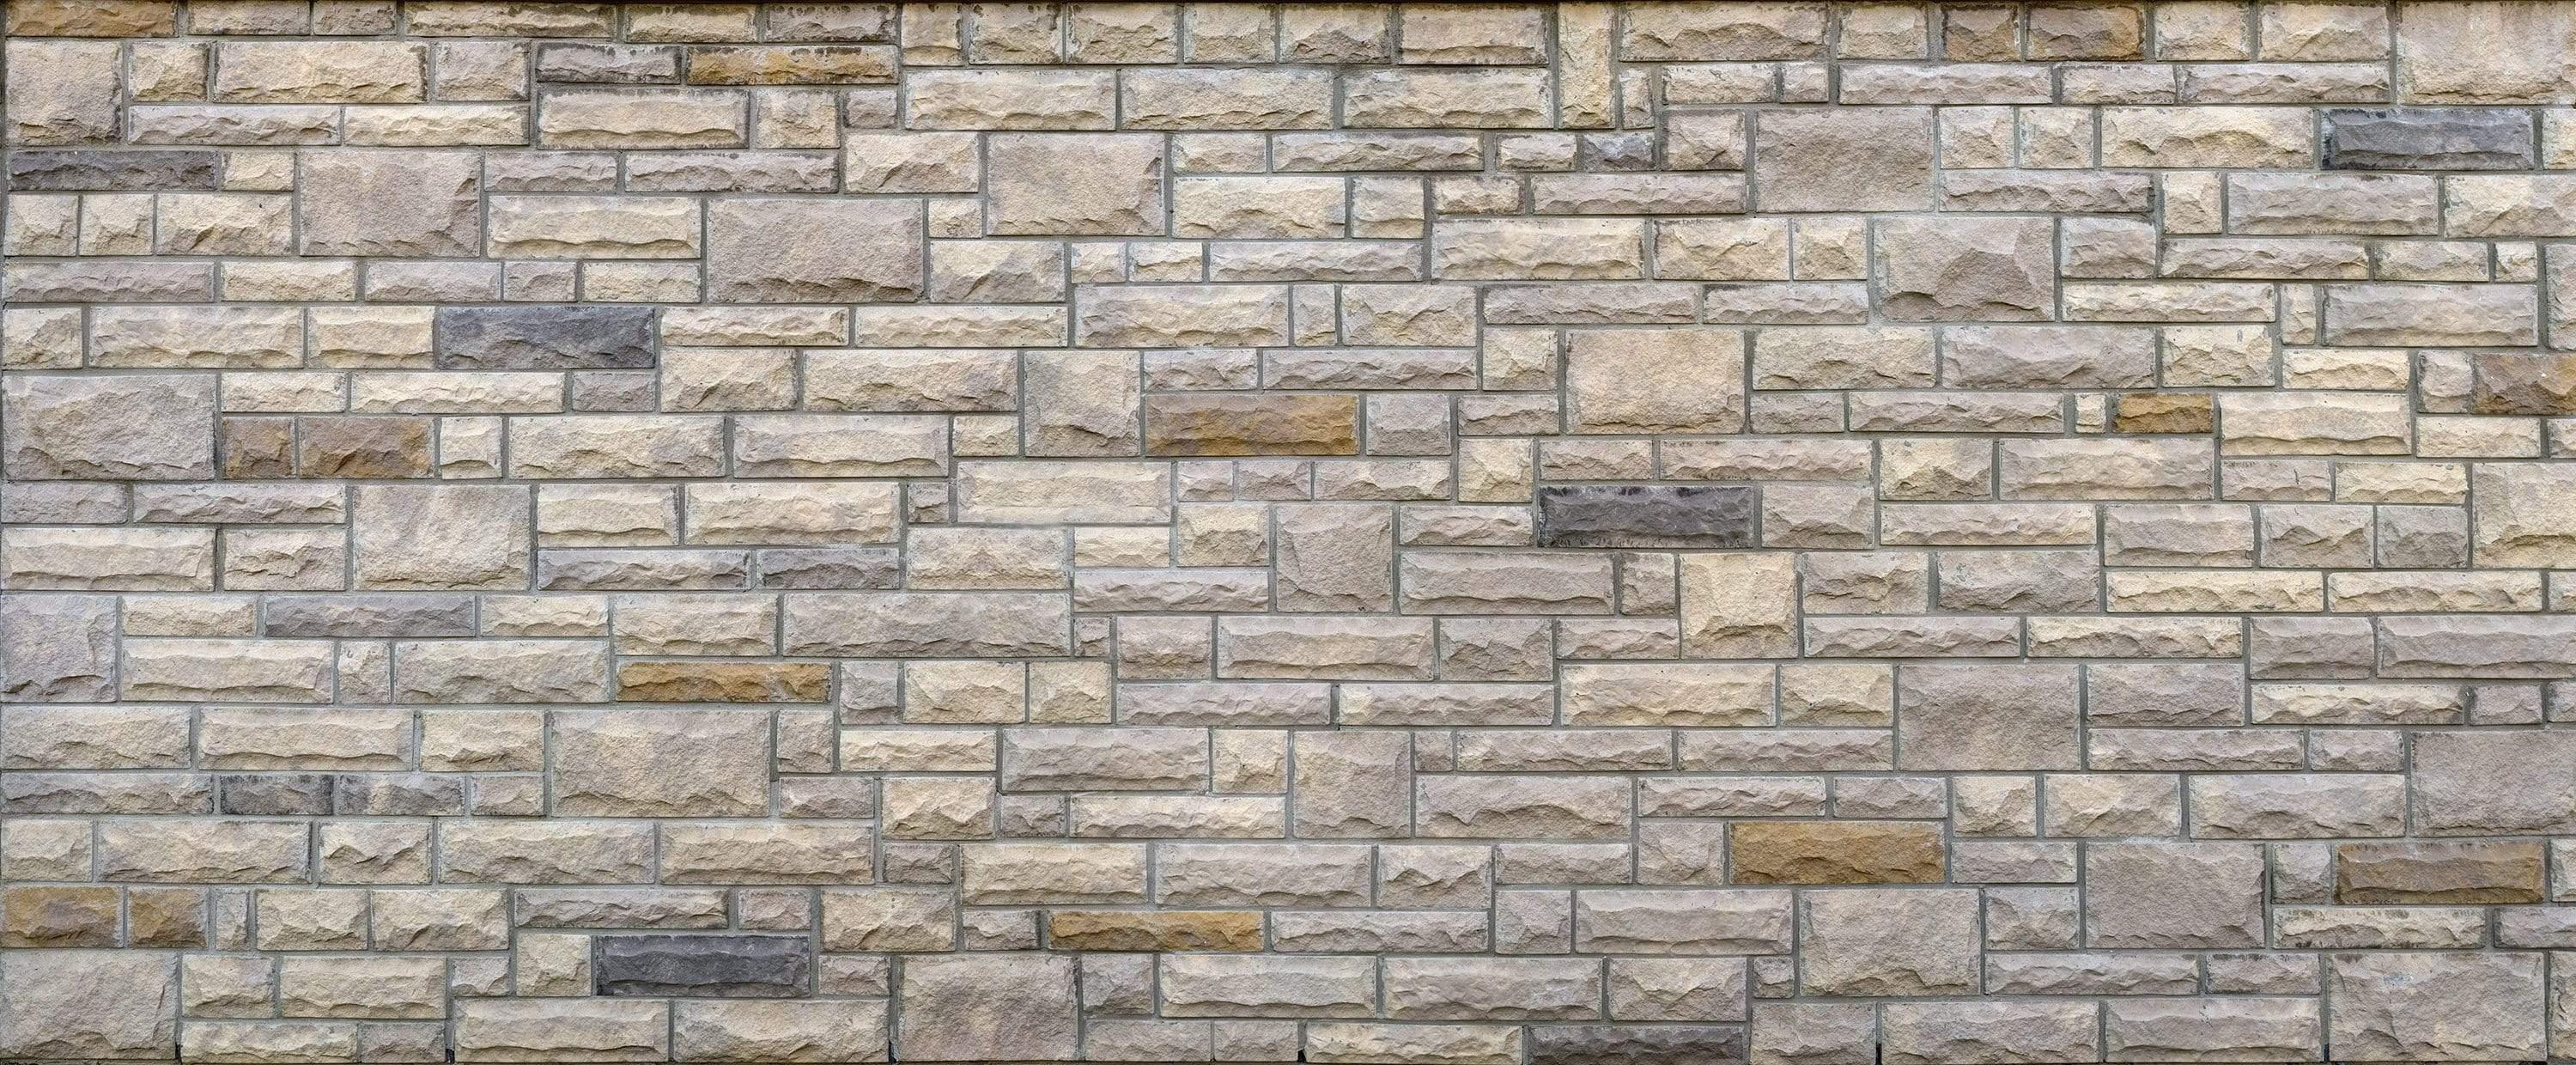 Big bricks wall MegaPixel image wallpaper